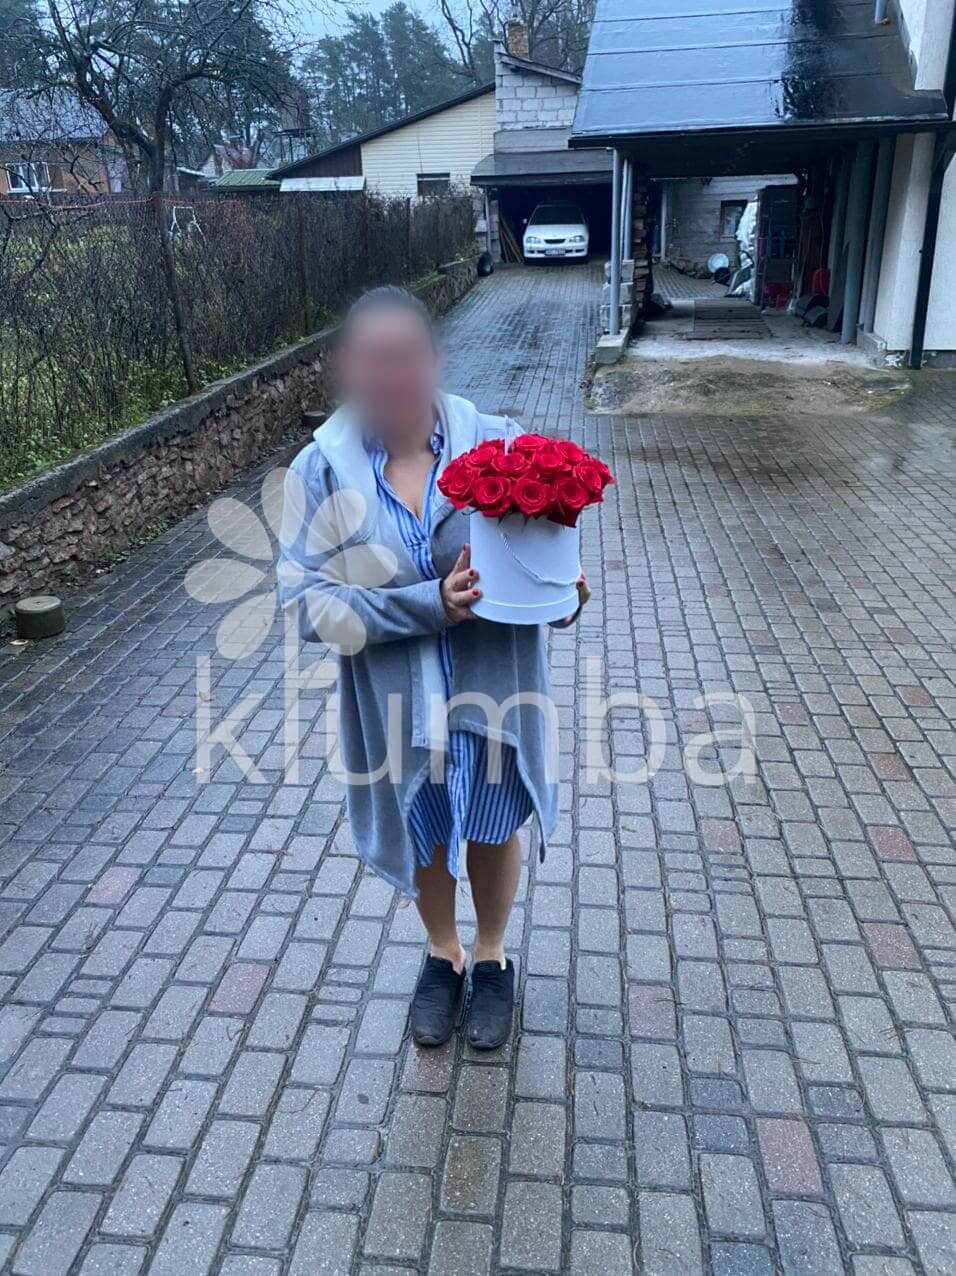 Доставка цветов в город Рига (коробкакрасные розы)